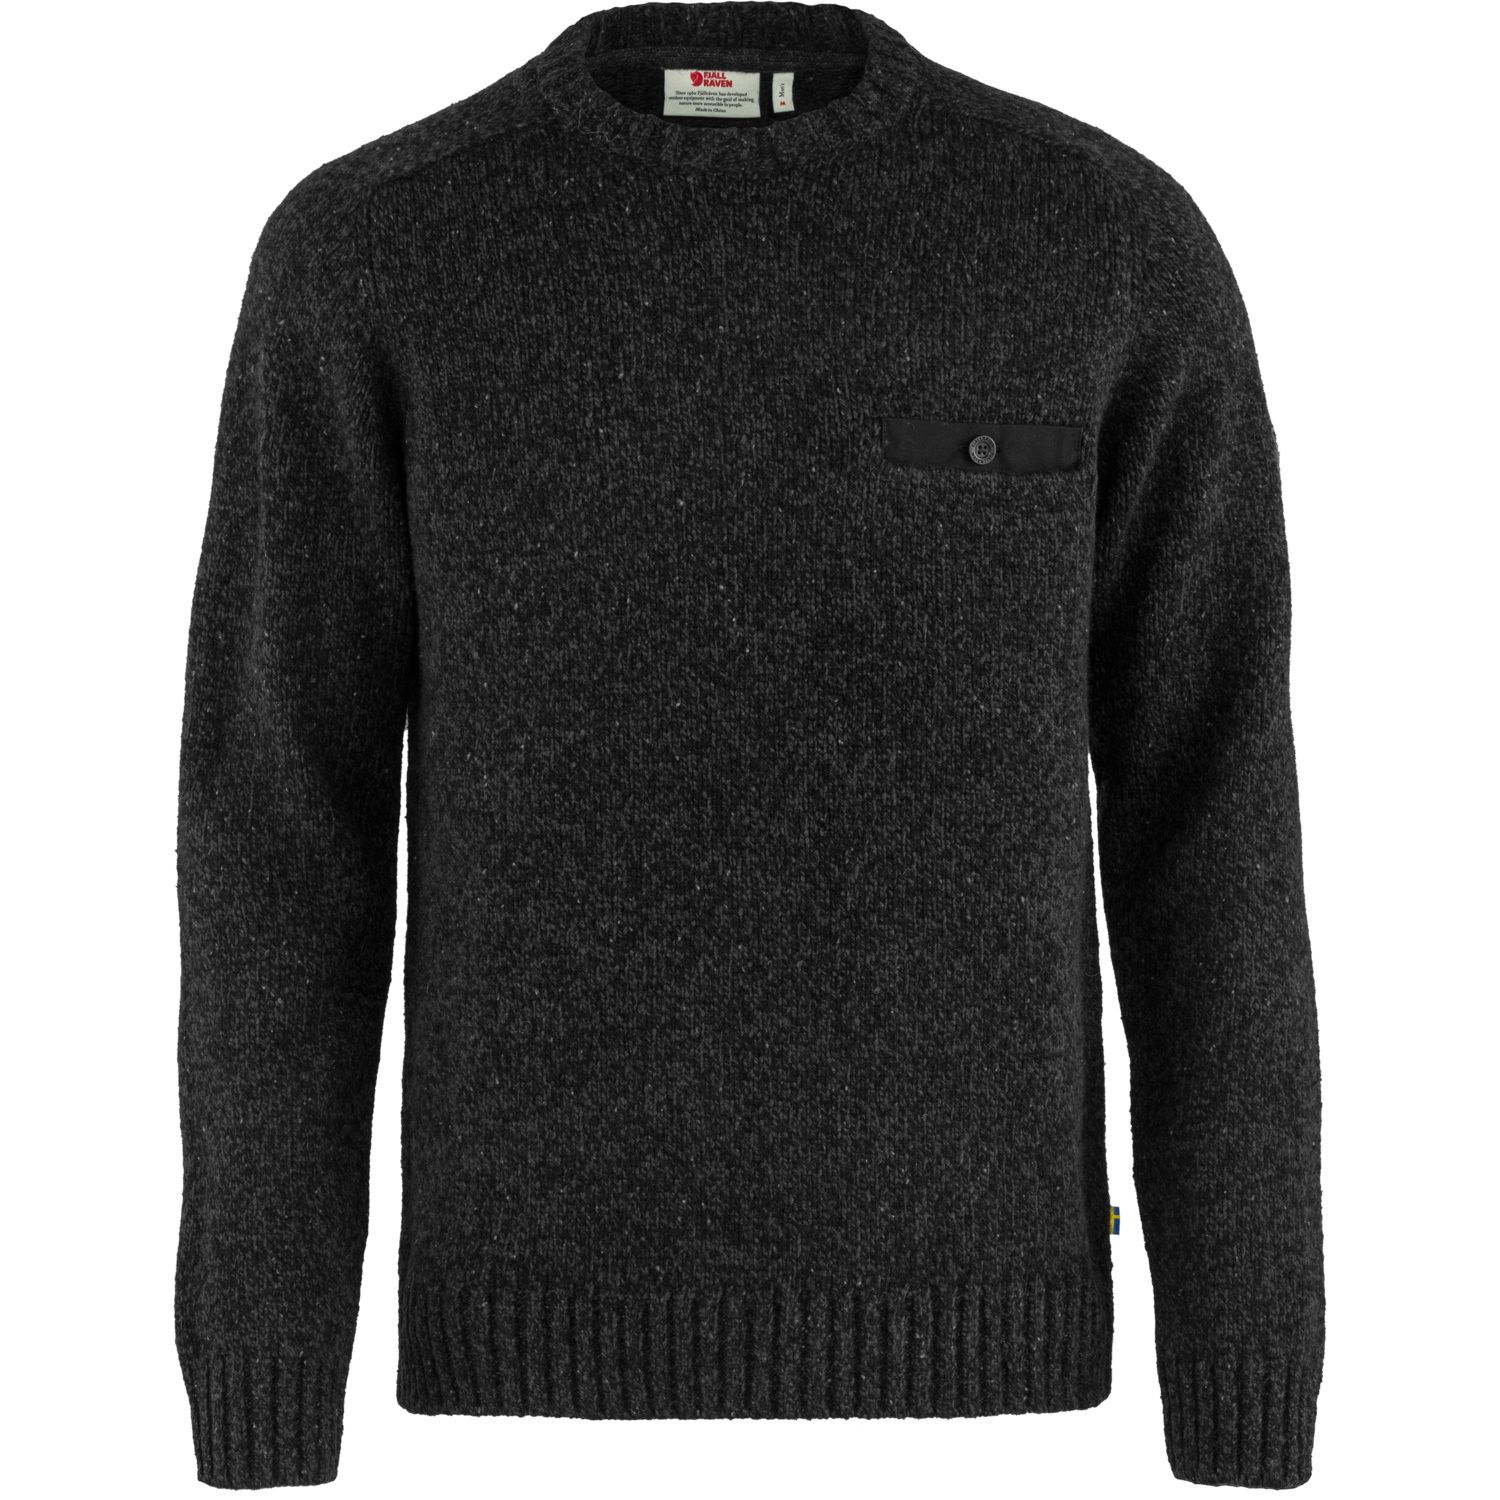 Men's Lada Round-neck Sweater Black